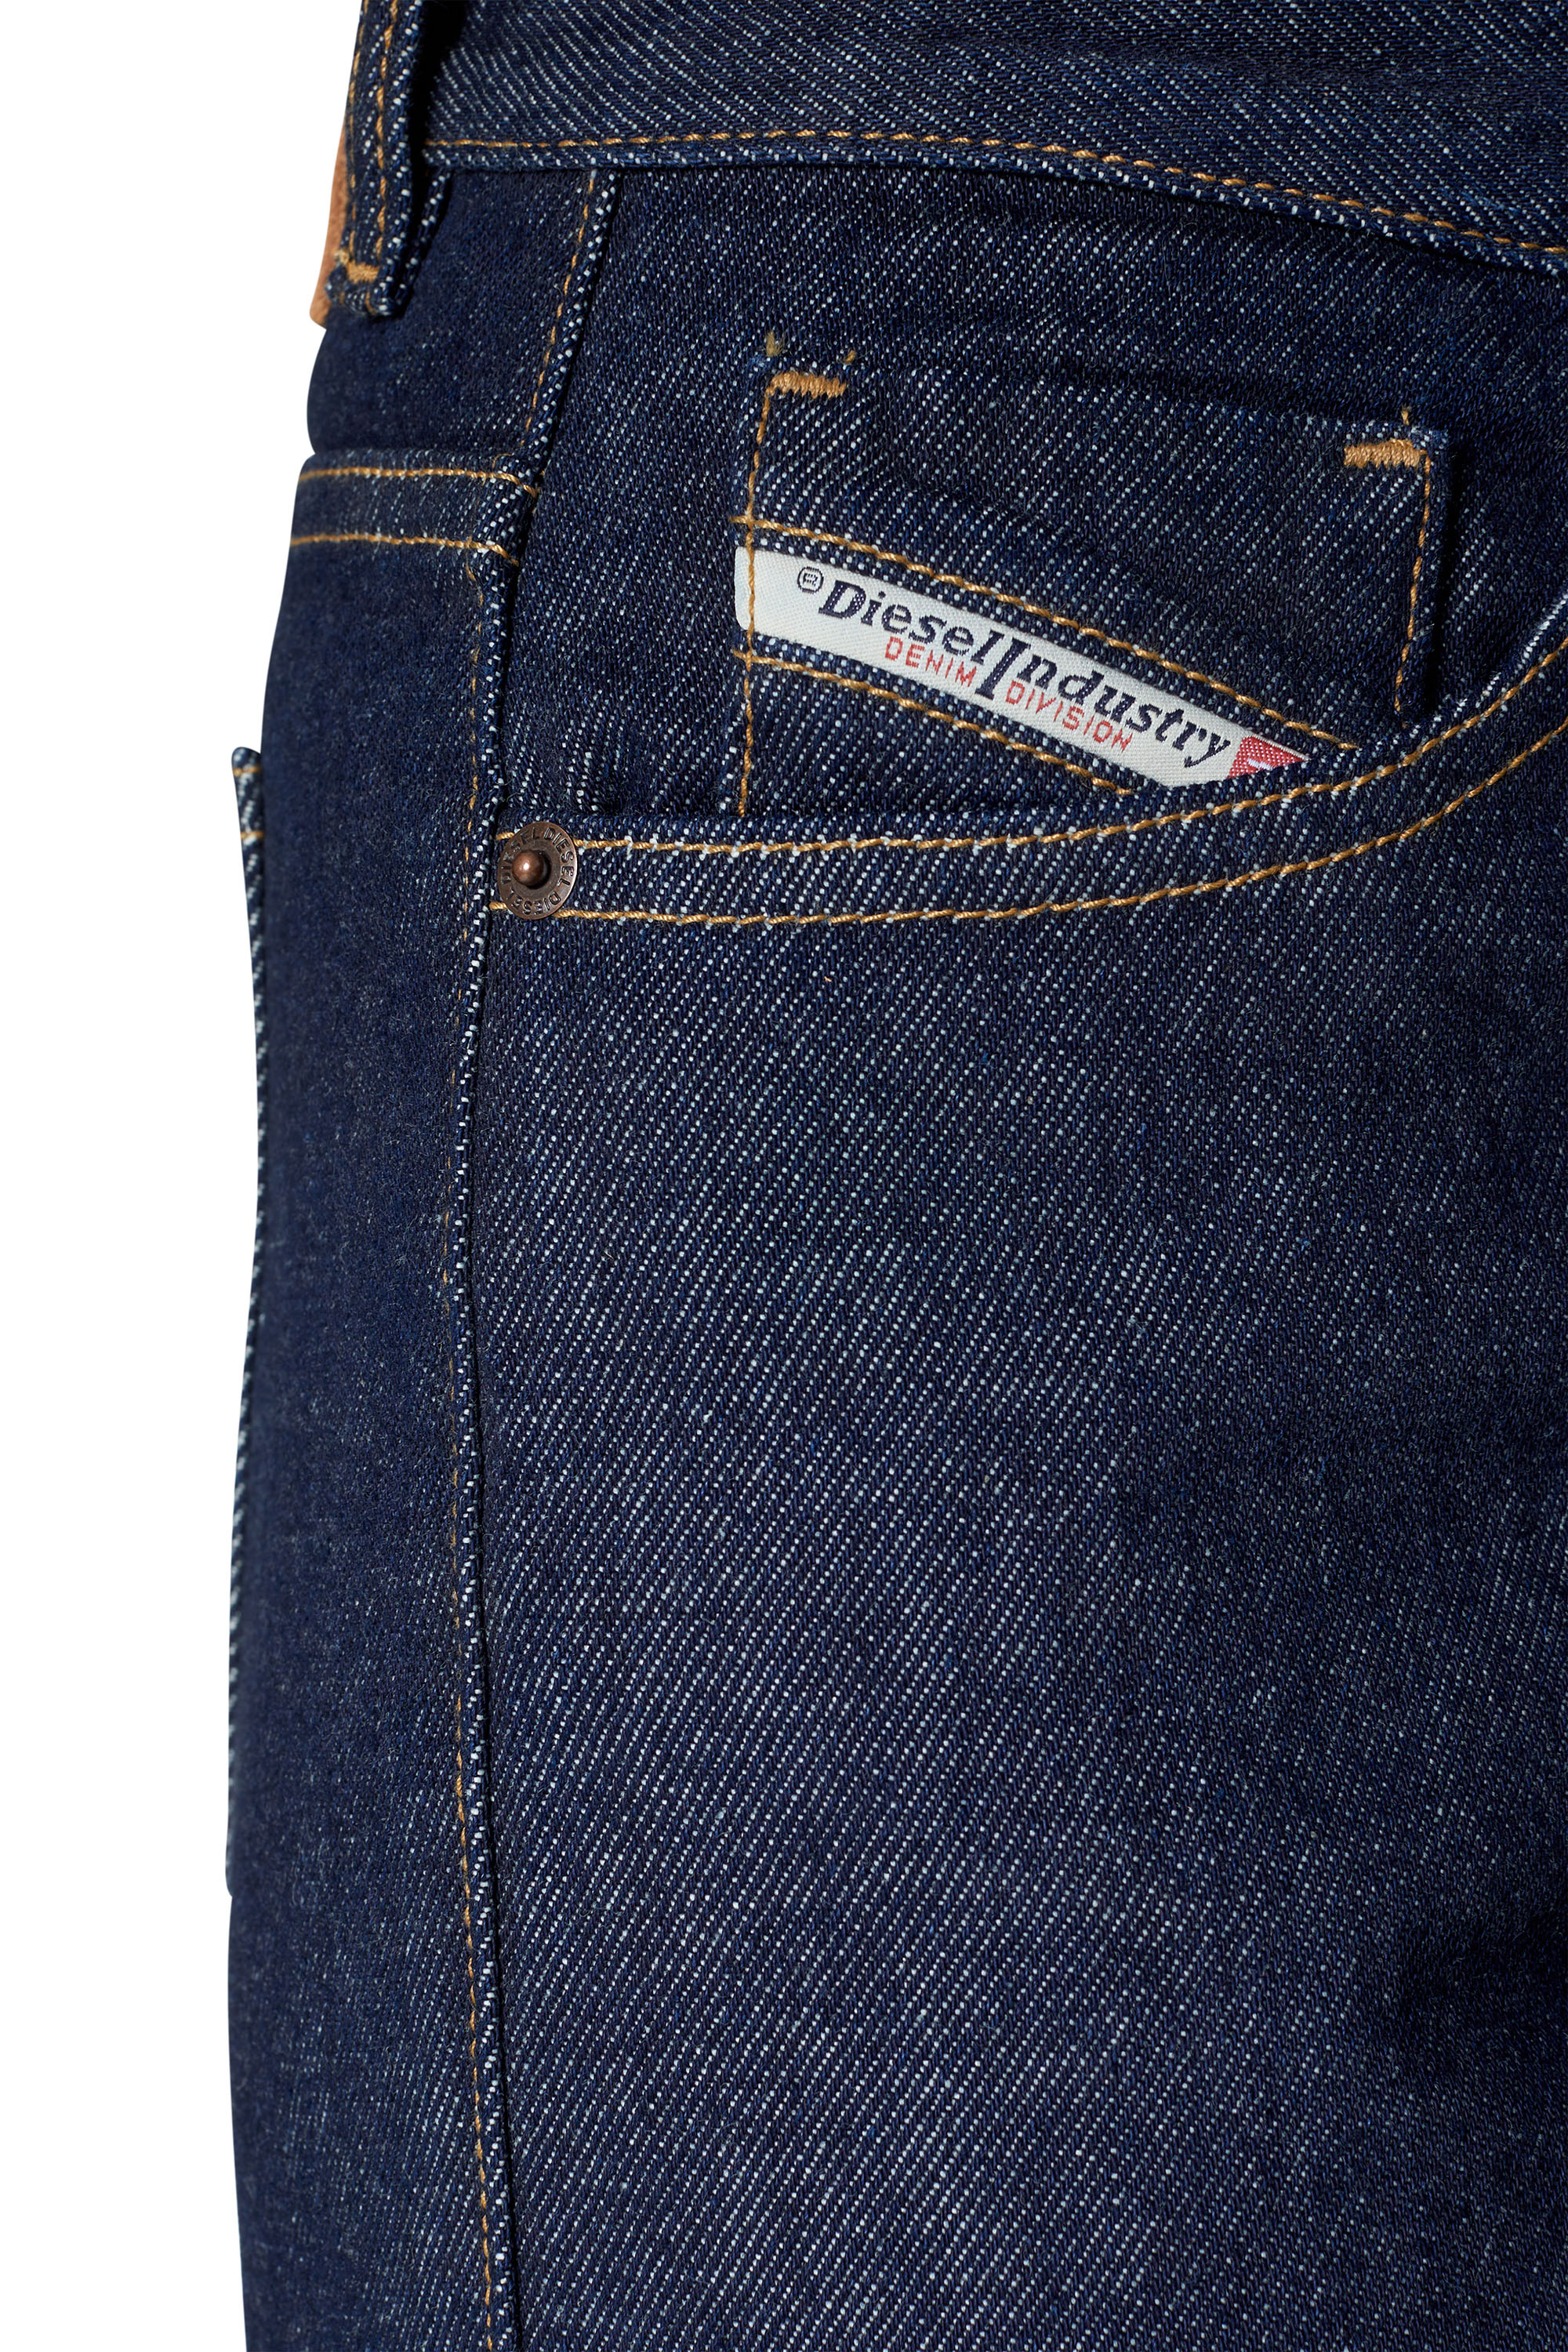 Diesel jeans weiß - Der Favorit unserer Tester